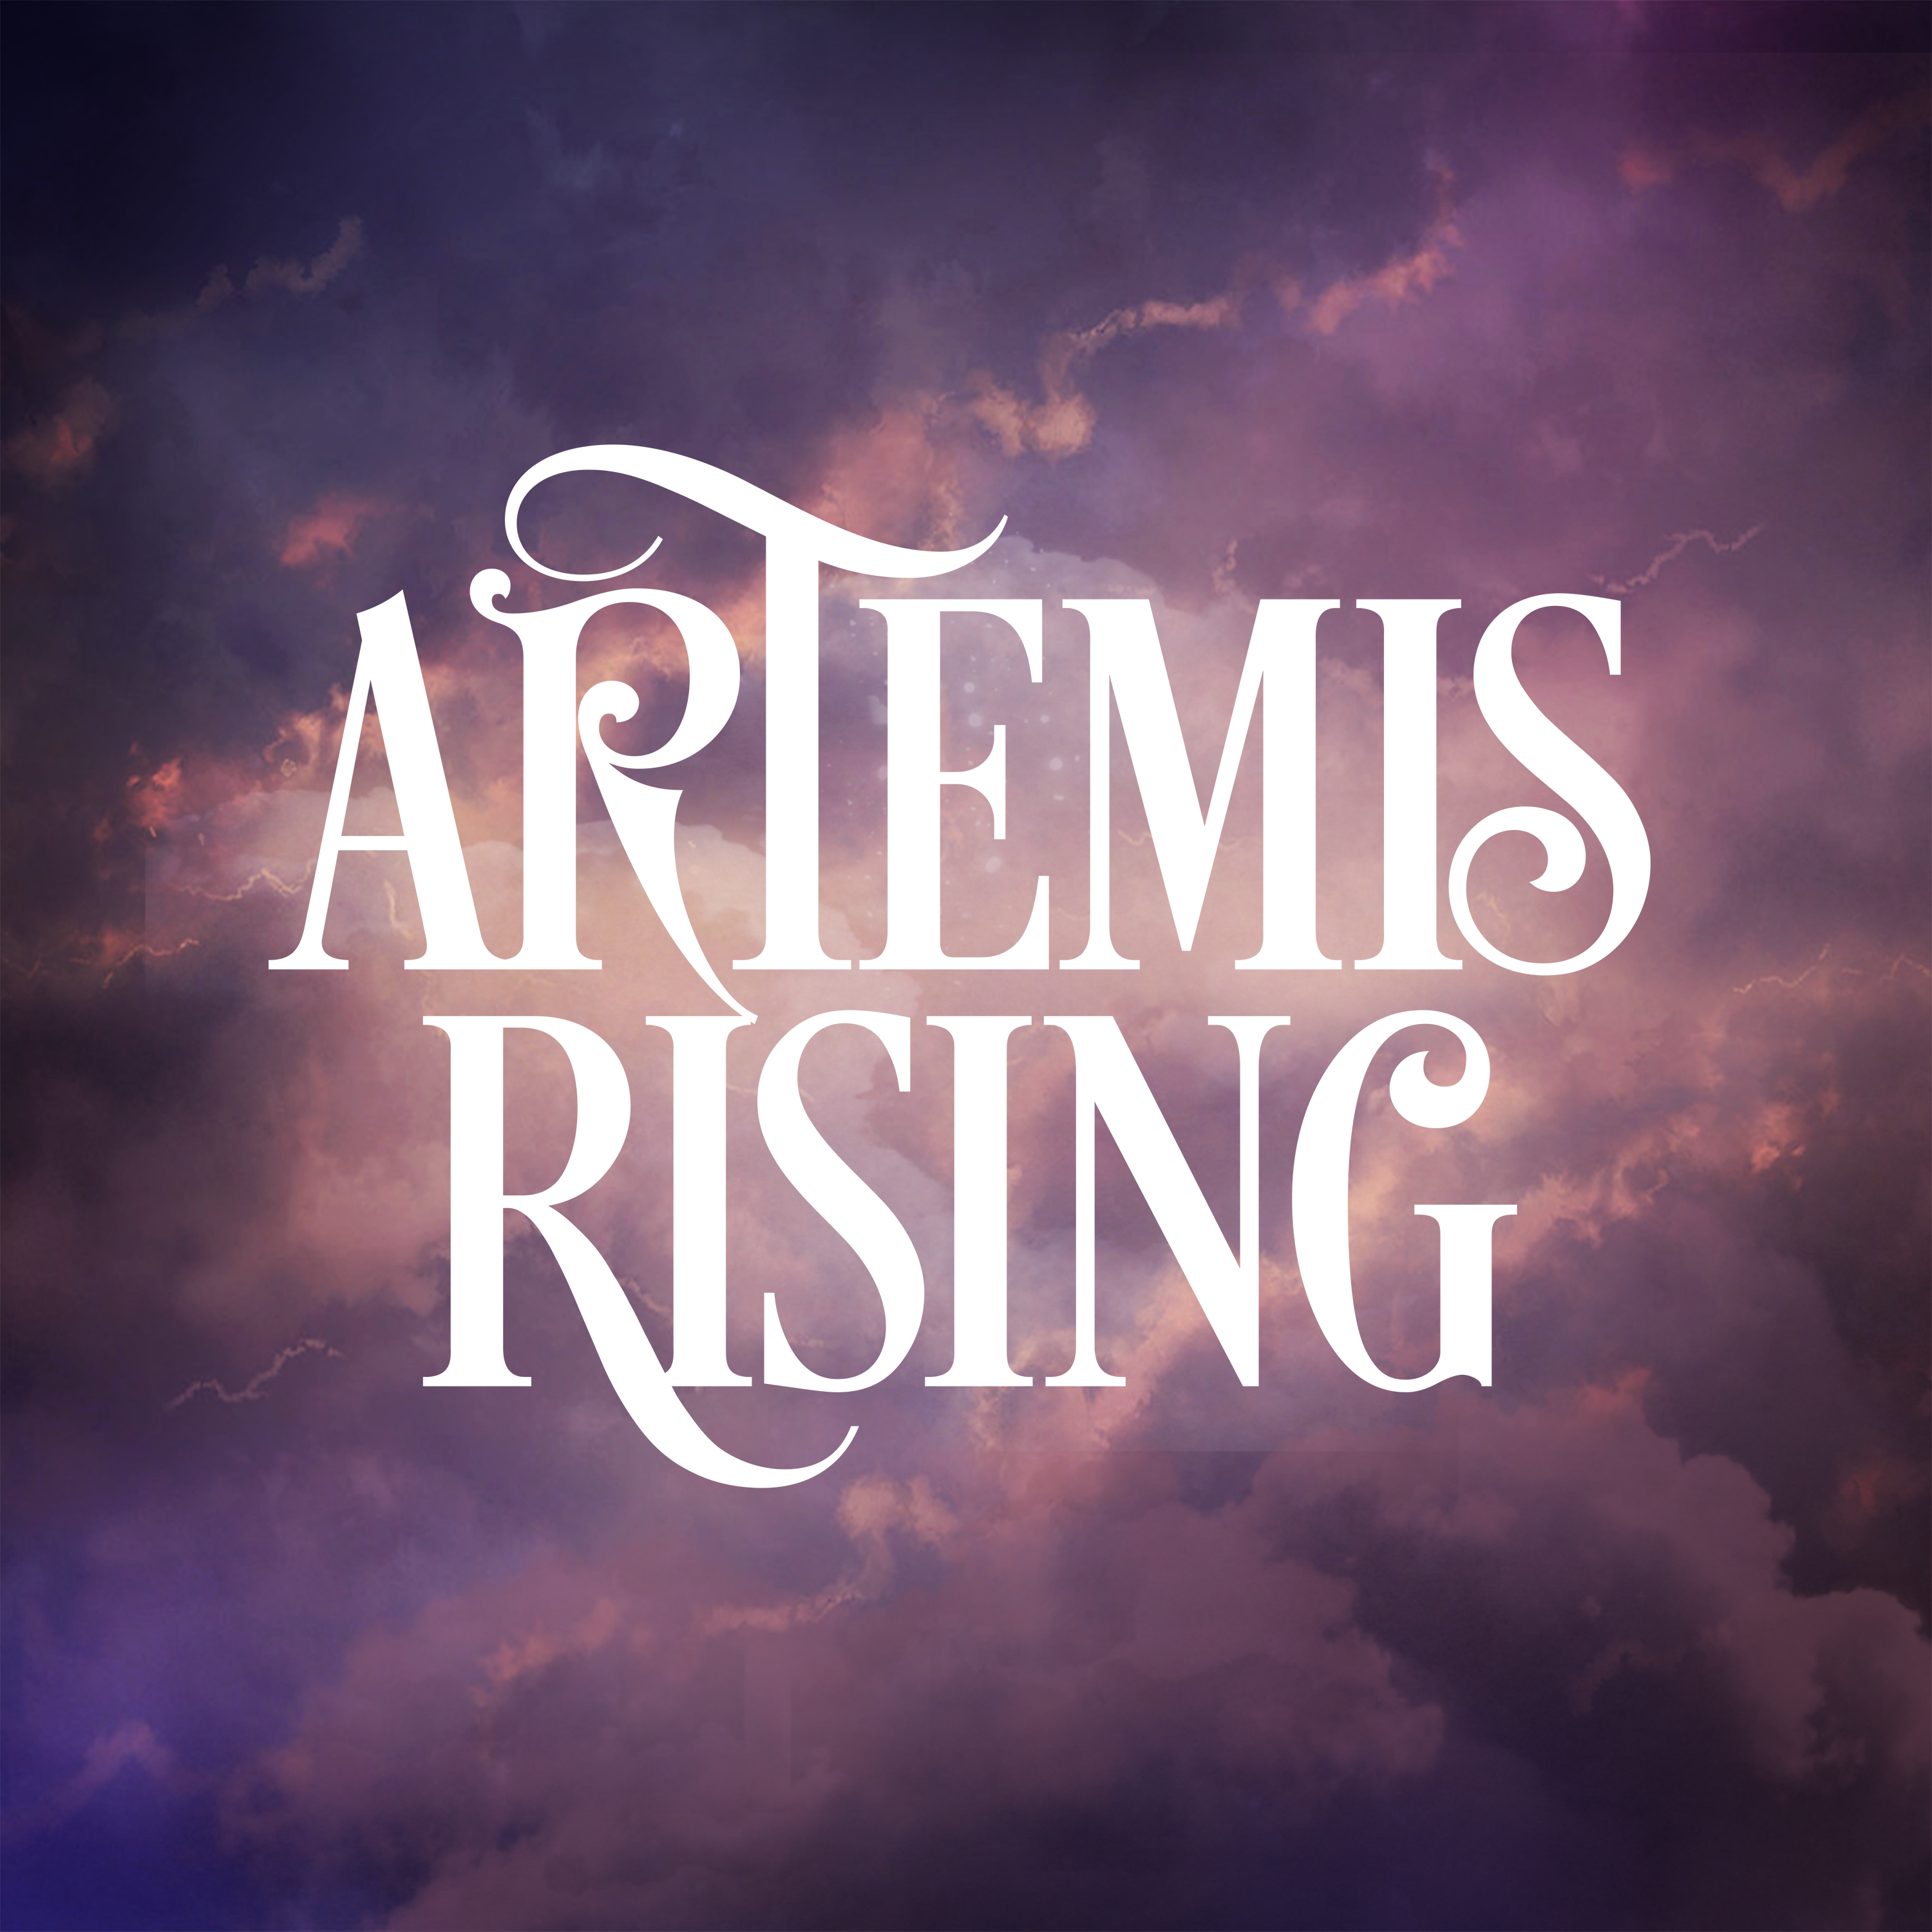 ARTEMIS RISING - Demons cover 